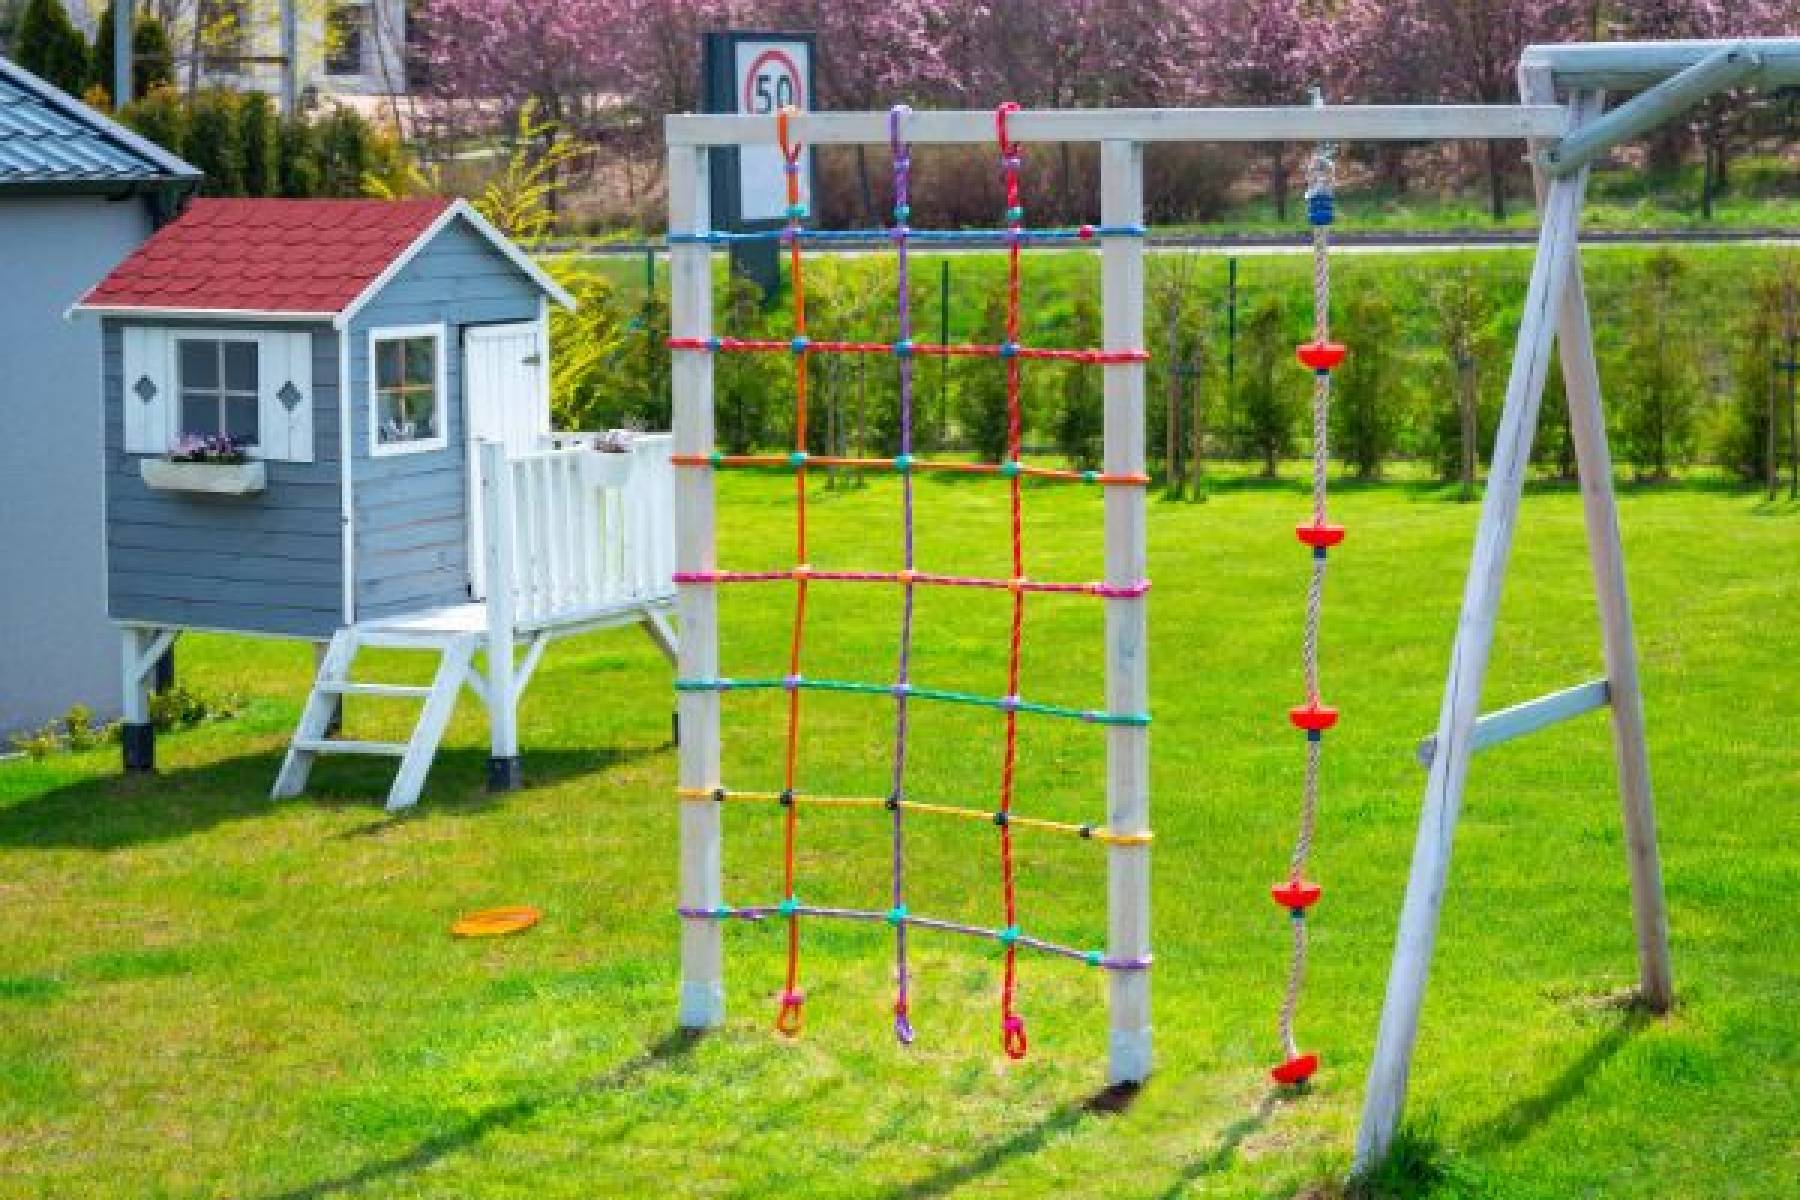 Plac zabaw w ogrodzie: elementy, które powinien zawierać plac zabaw i jak je wybrać